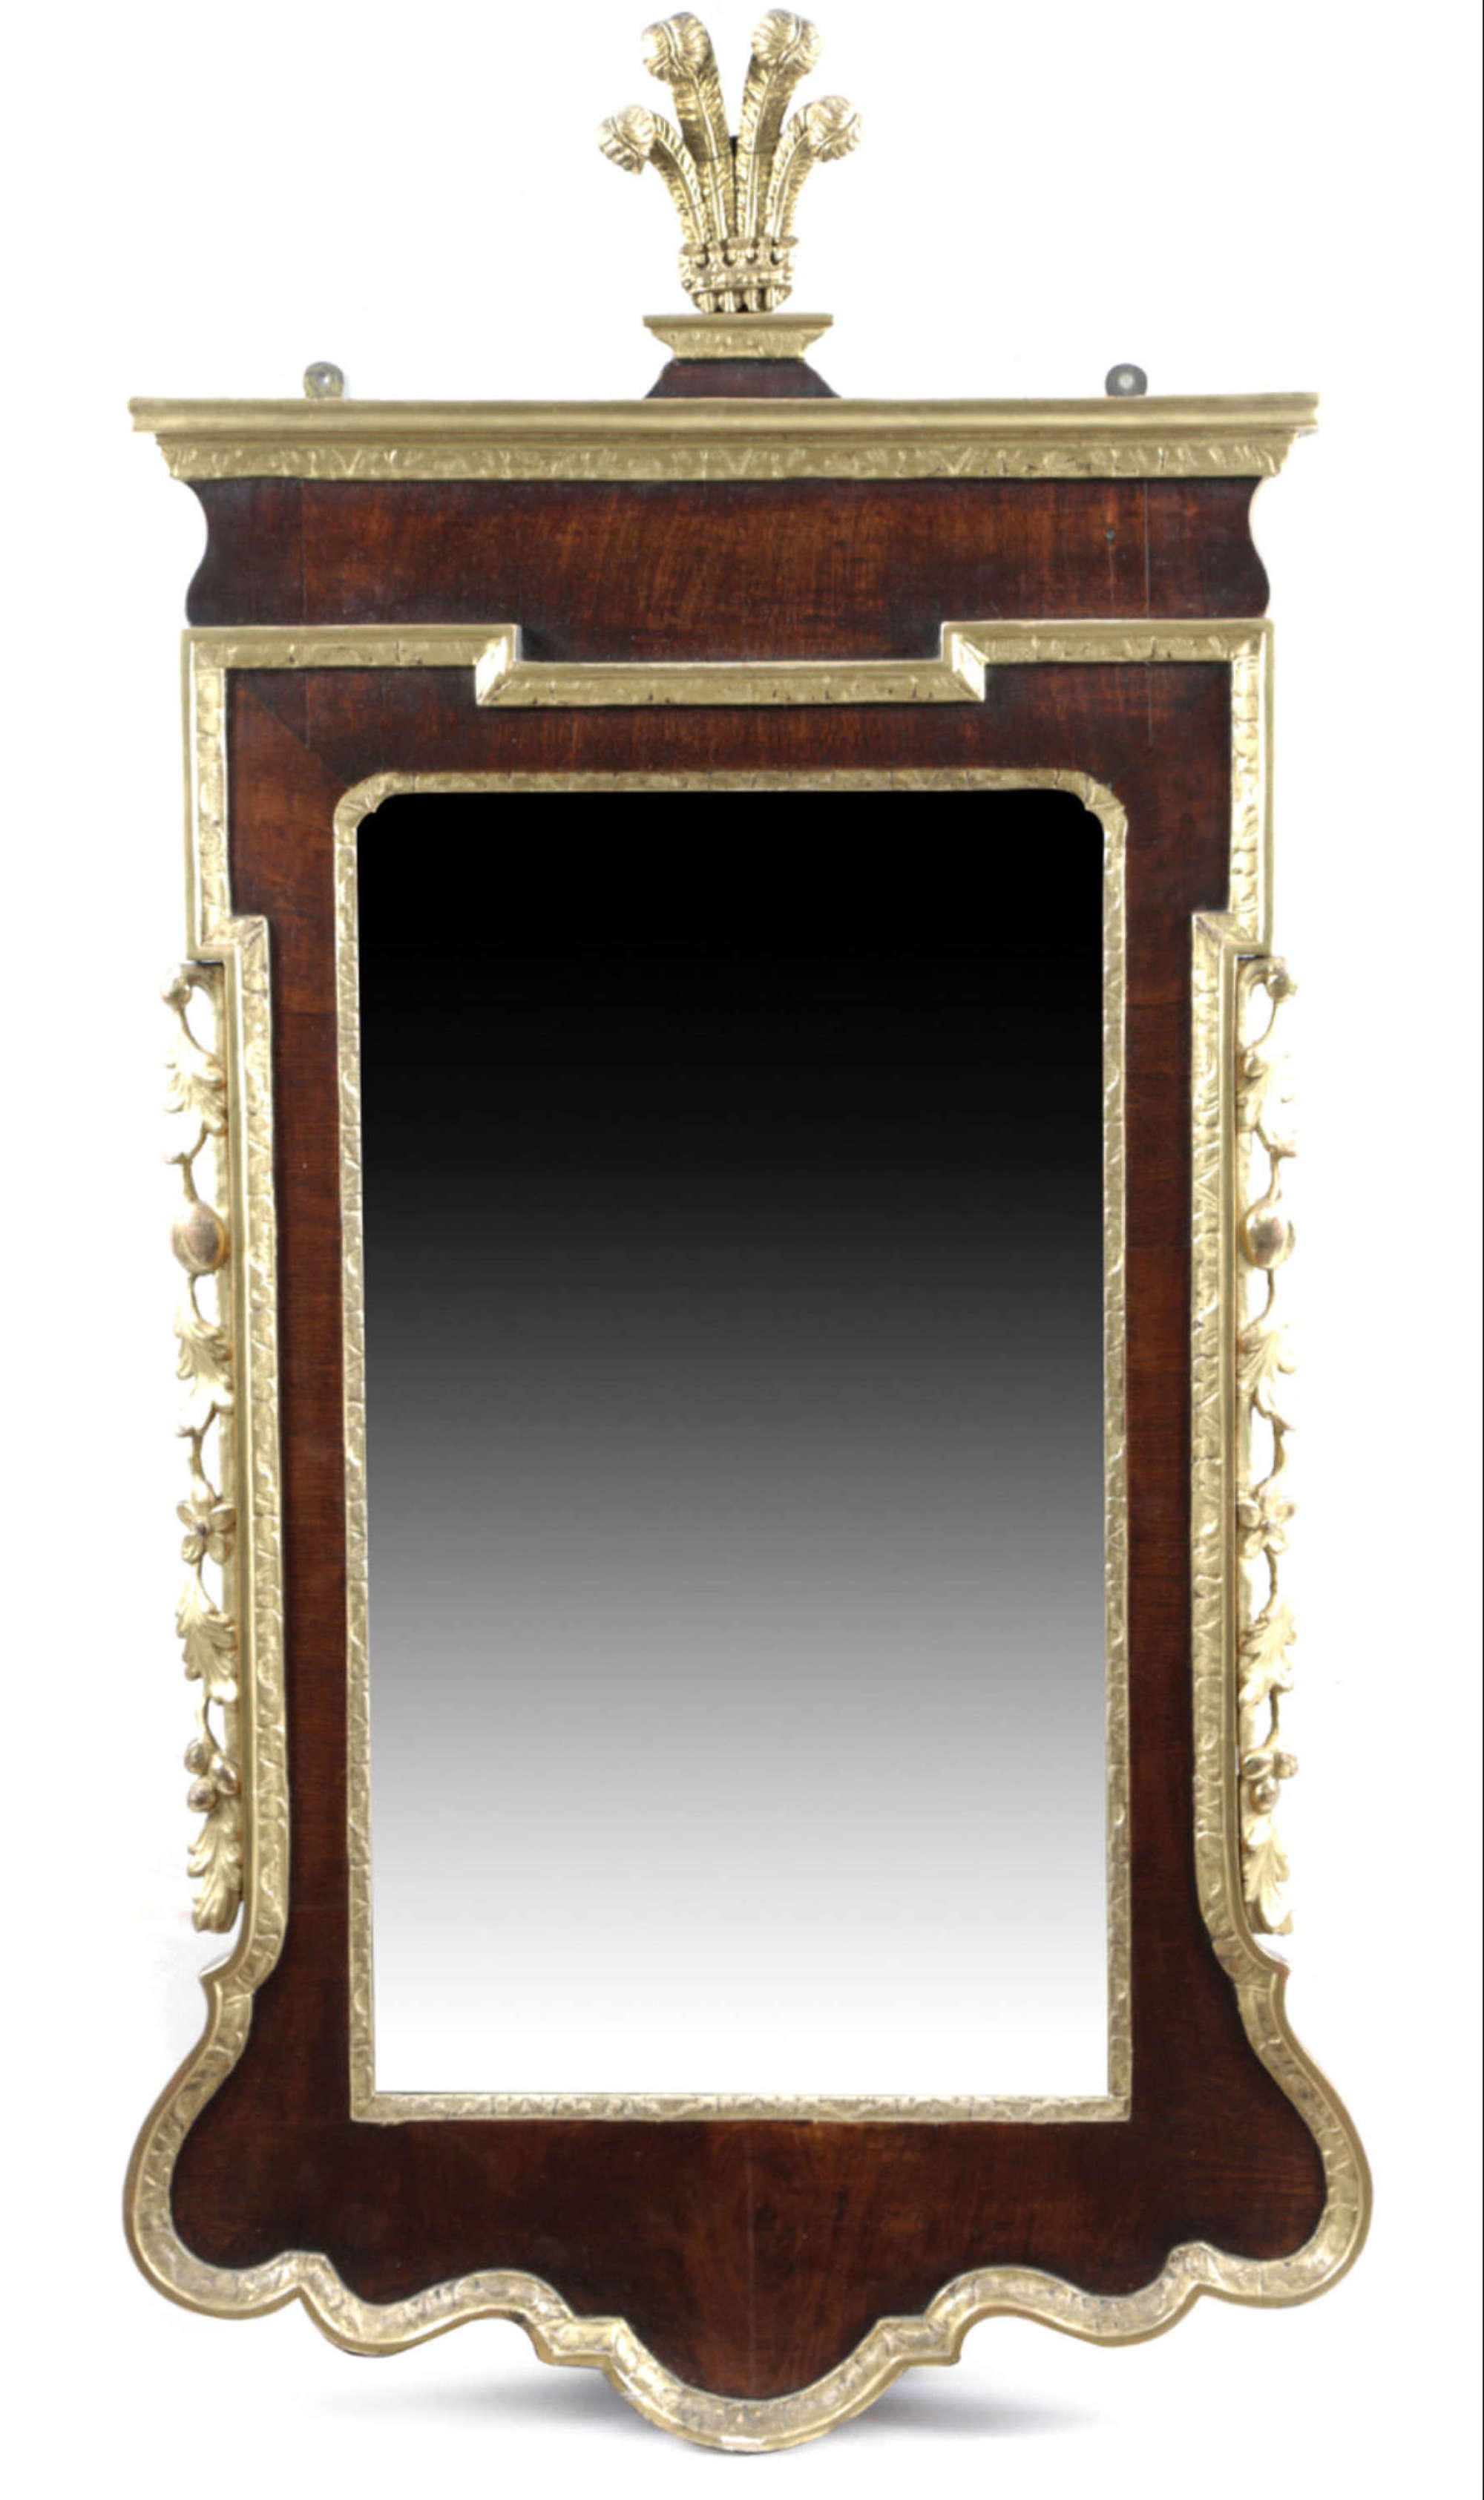 A mahogany and gilt-wood wall mirror